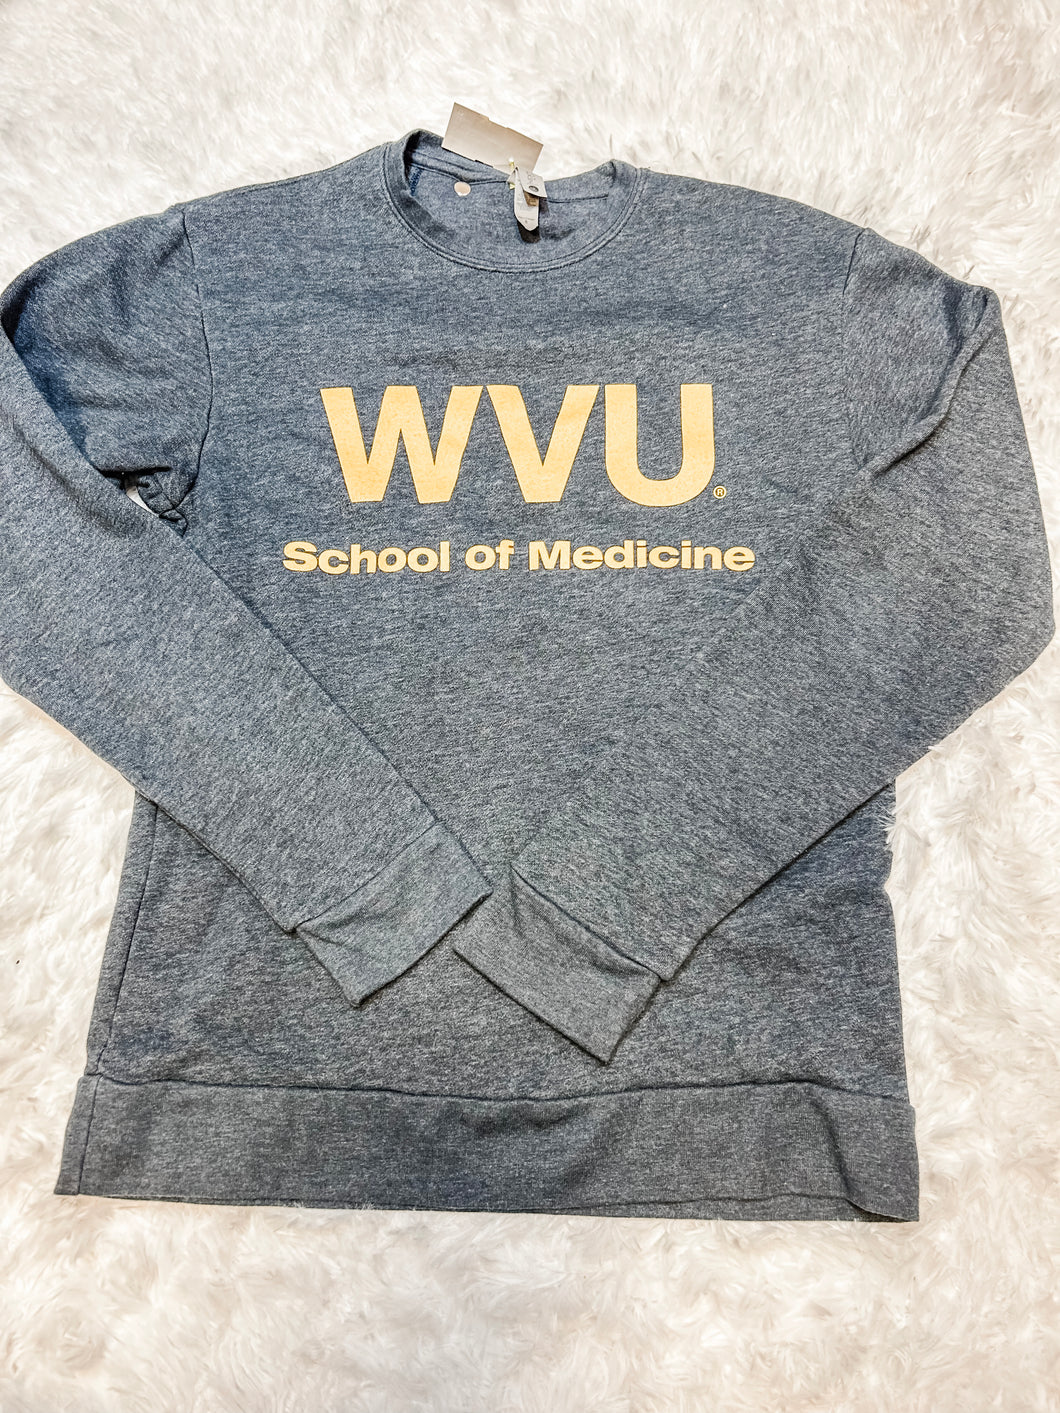 WVU Sweatshirt Size Small M0545